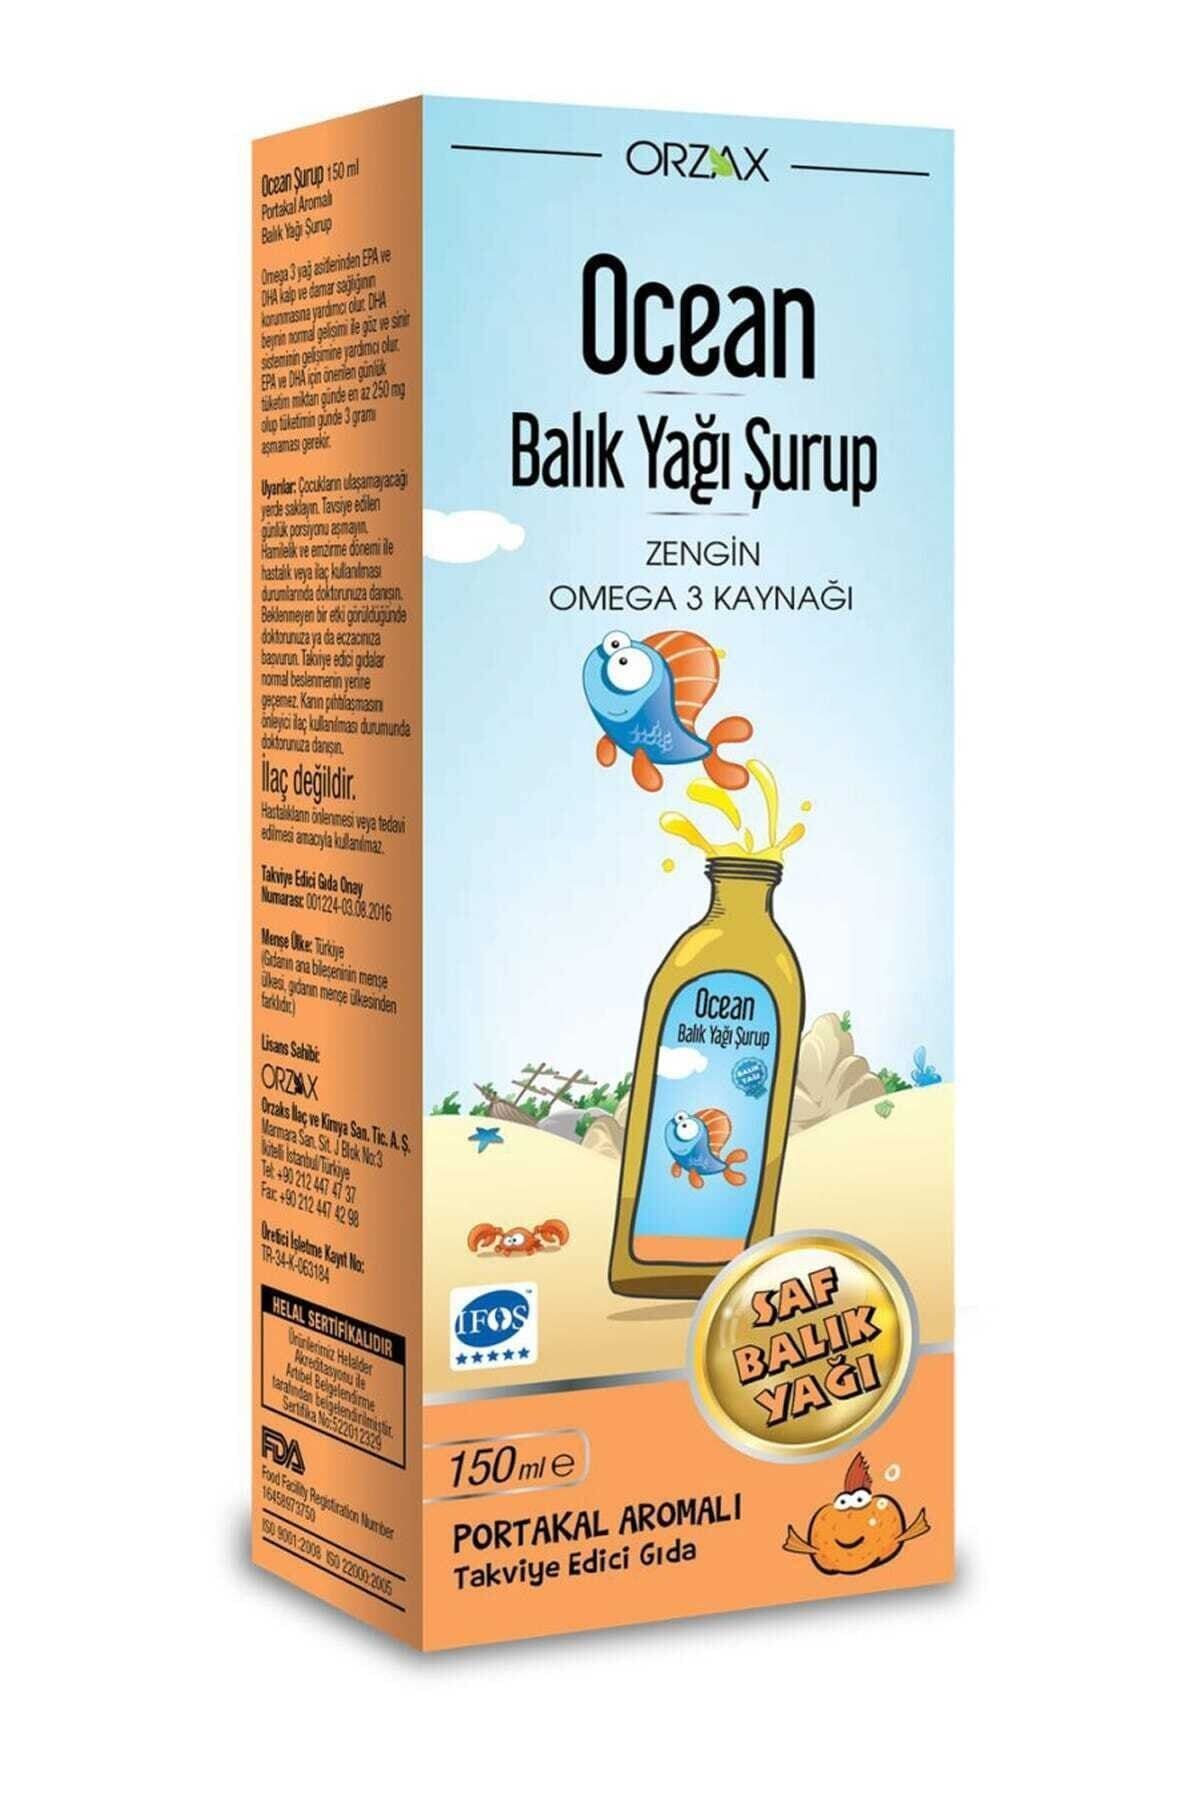 Ocean Orzax Balık Yağı Şurubu Portakal Aromalı 150ml